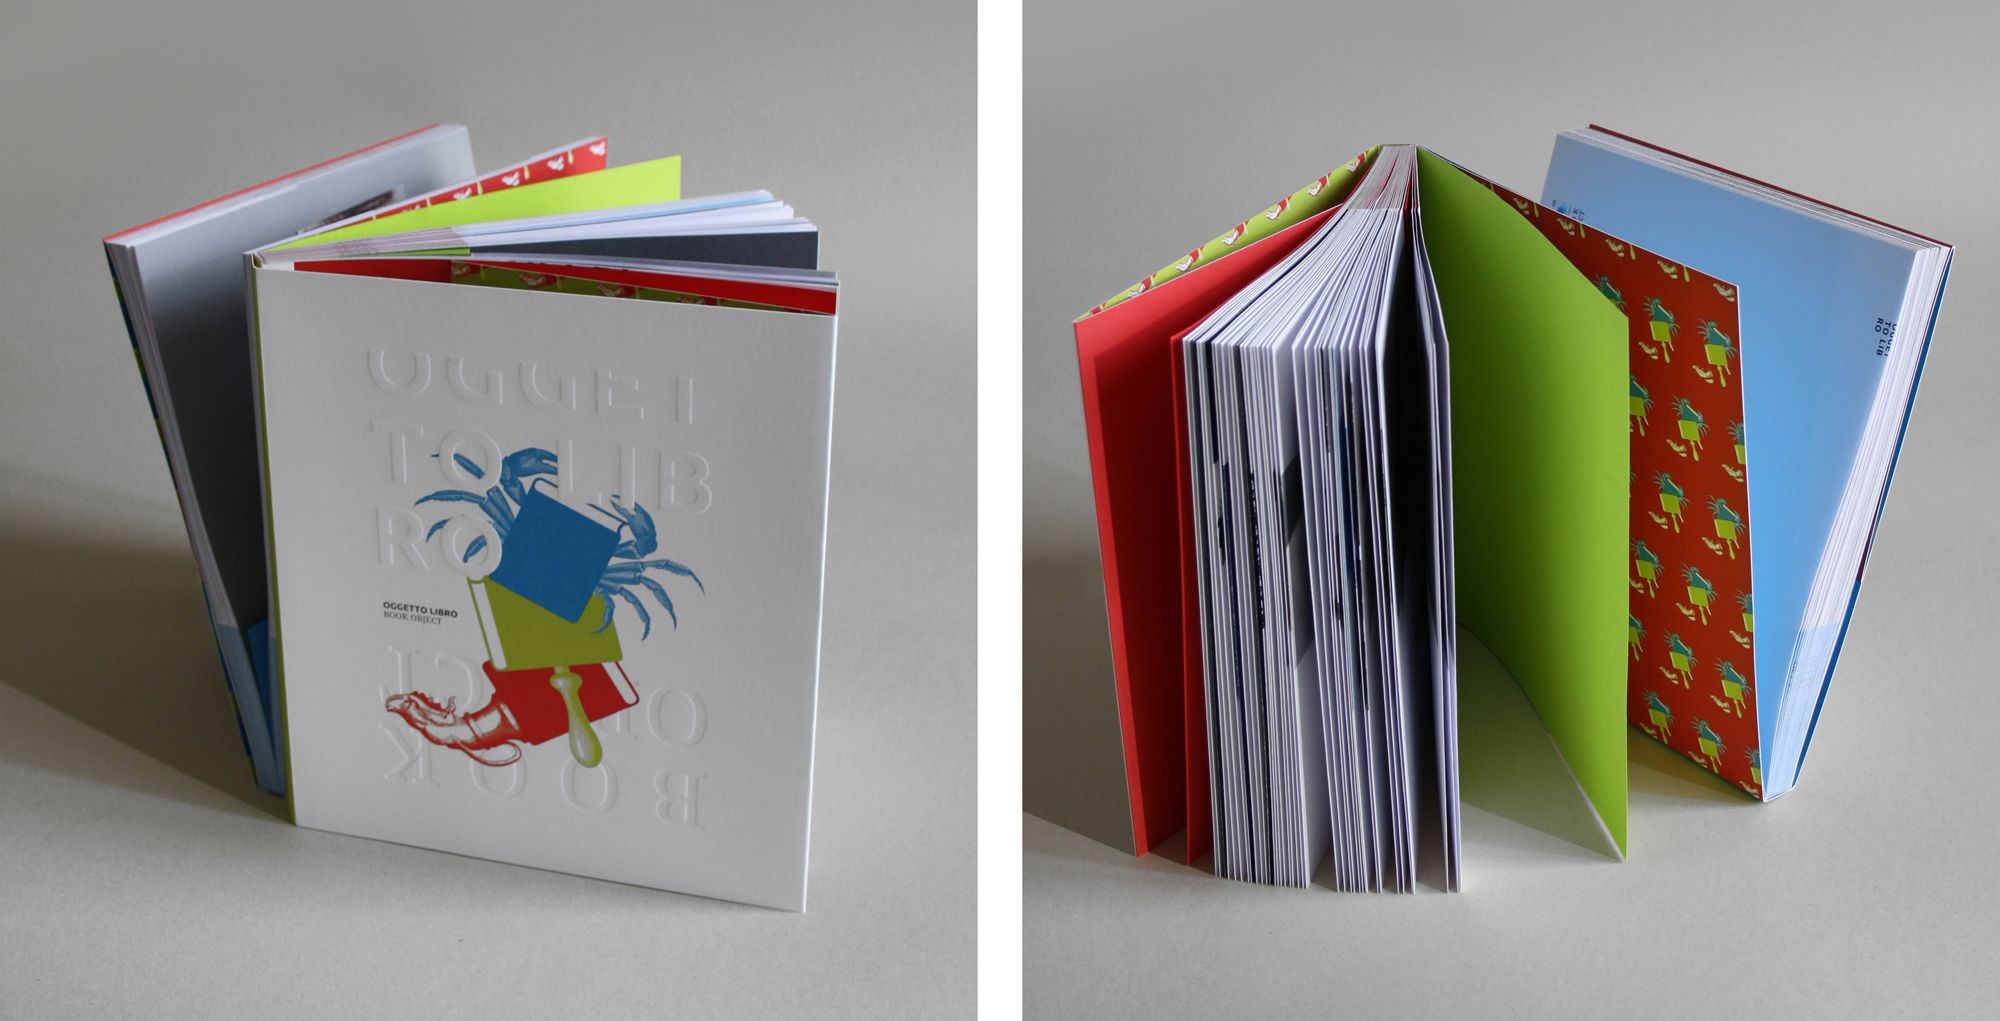 Oggetto libro / Book object by Susanna Vallebona / ESSEBLU - Creative Work - $i